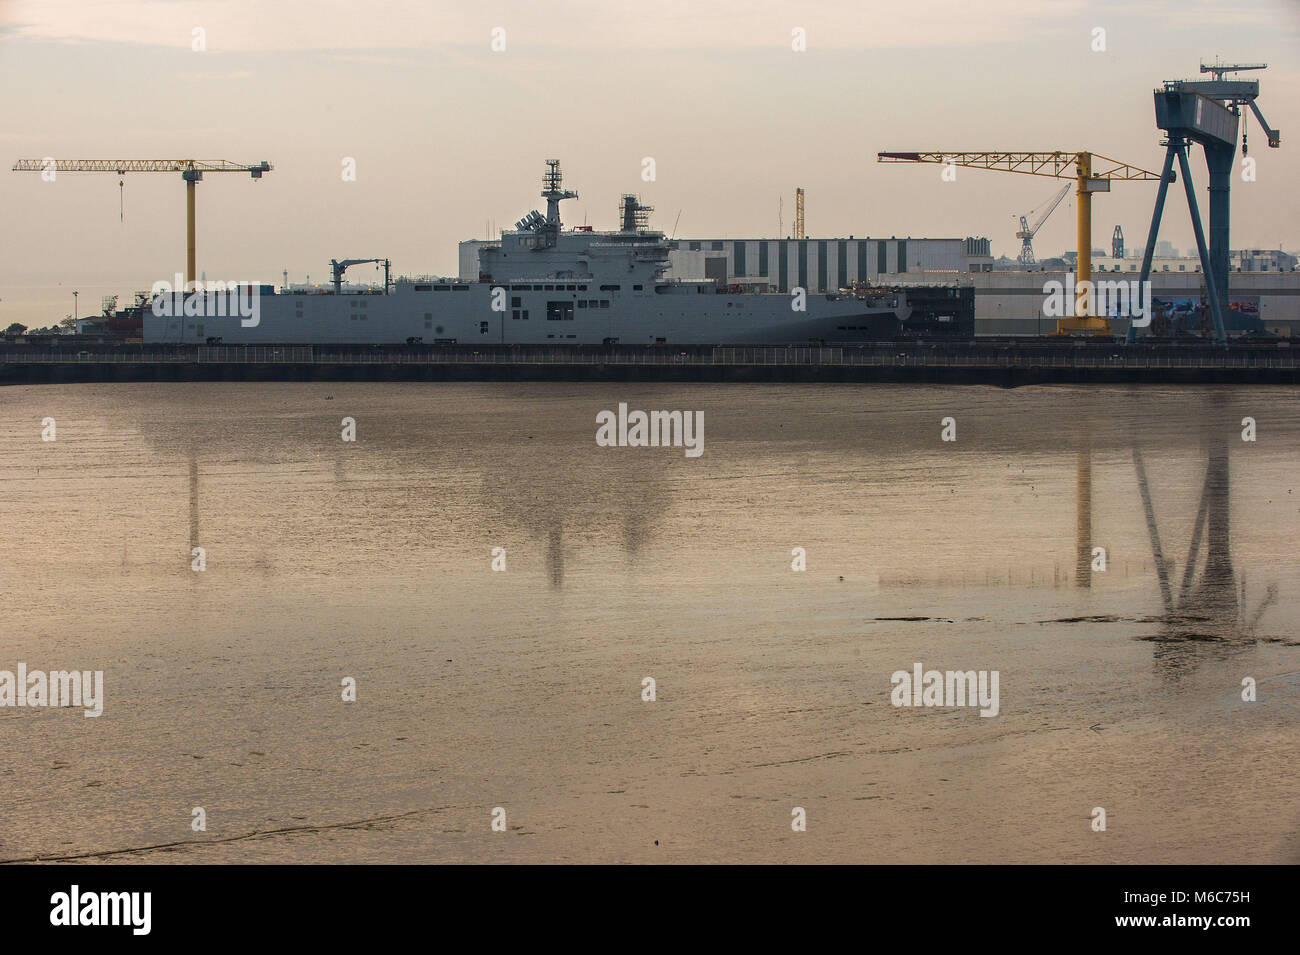 Saint Nazaire, der ebastopol' russischen Flugzeugträger der STX Werften gebaut. Frankreich Stockfoto